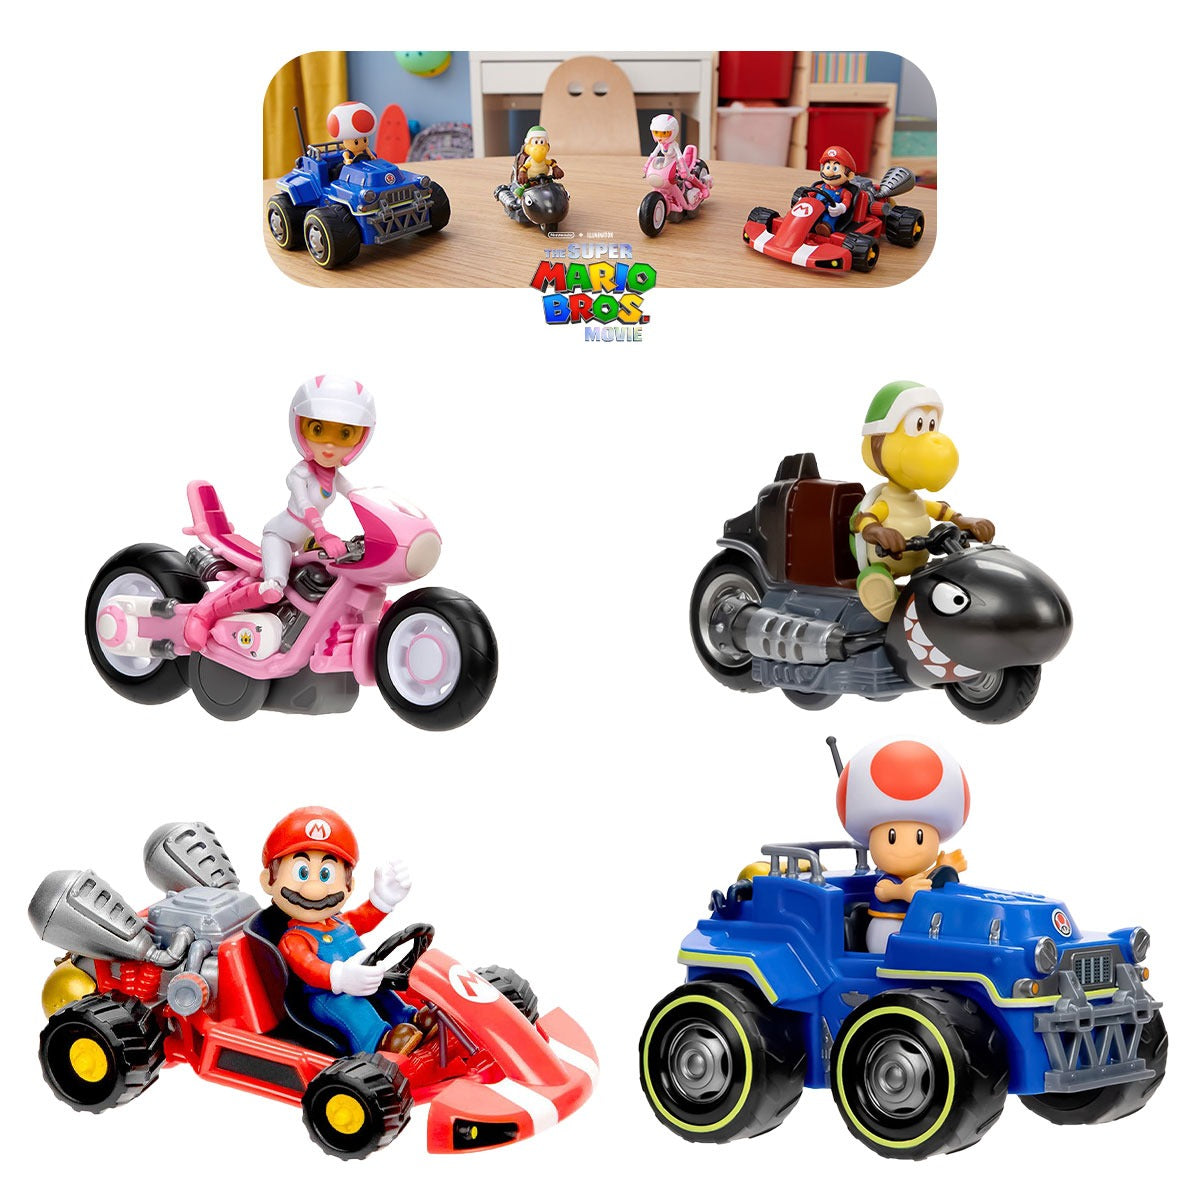 Set de Juguetes Mario Kart Figuras Articuladas y Carritos